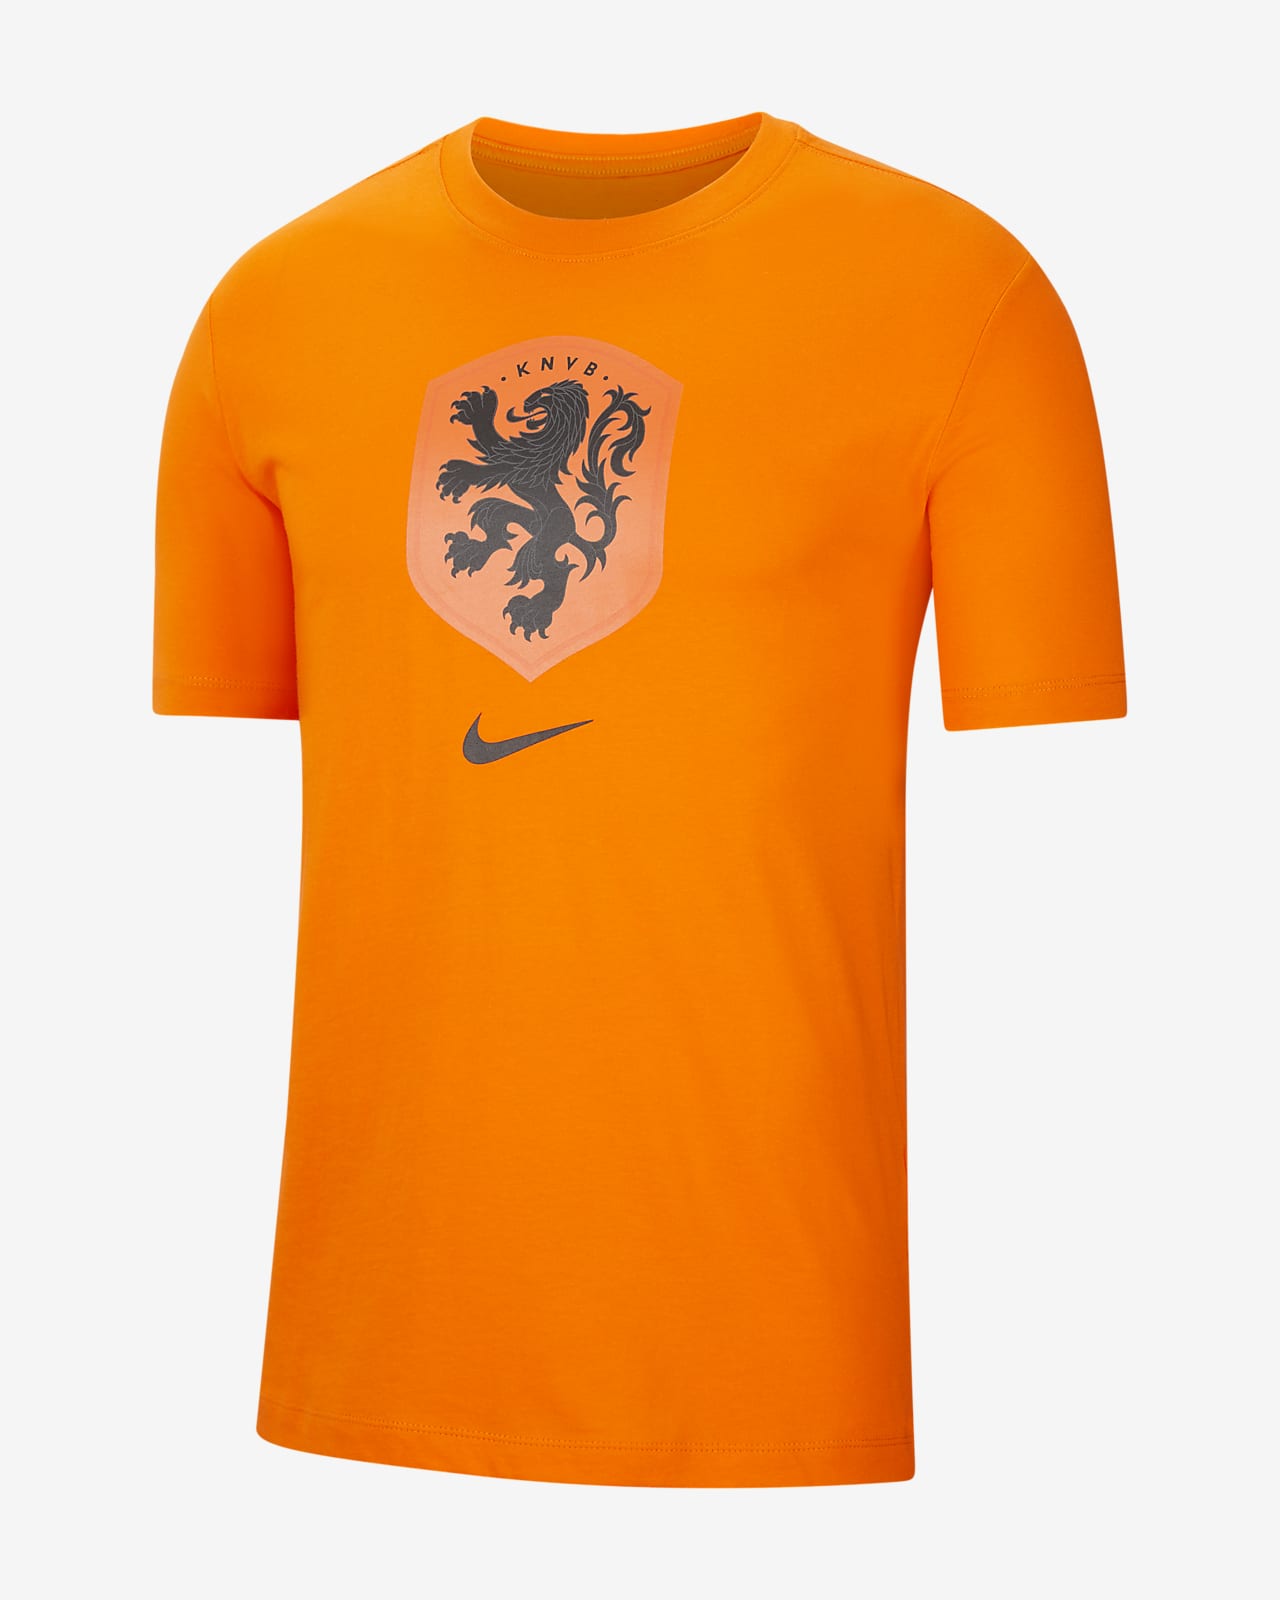 Netherlands Men's Football T-Shirt. Nike EG